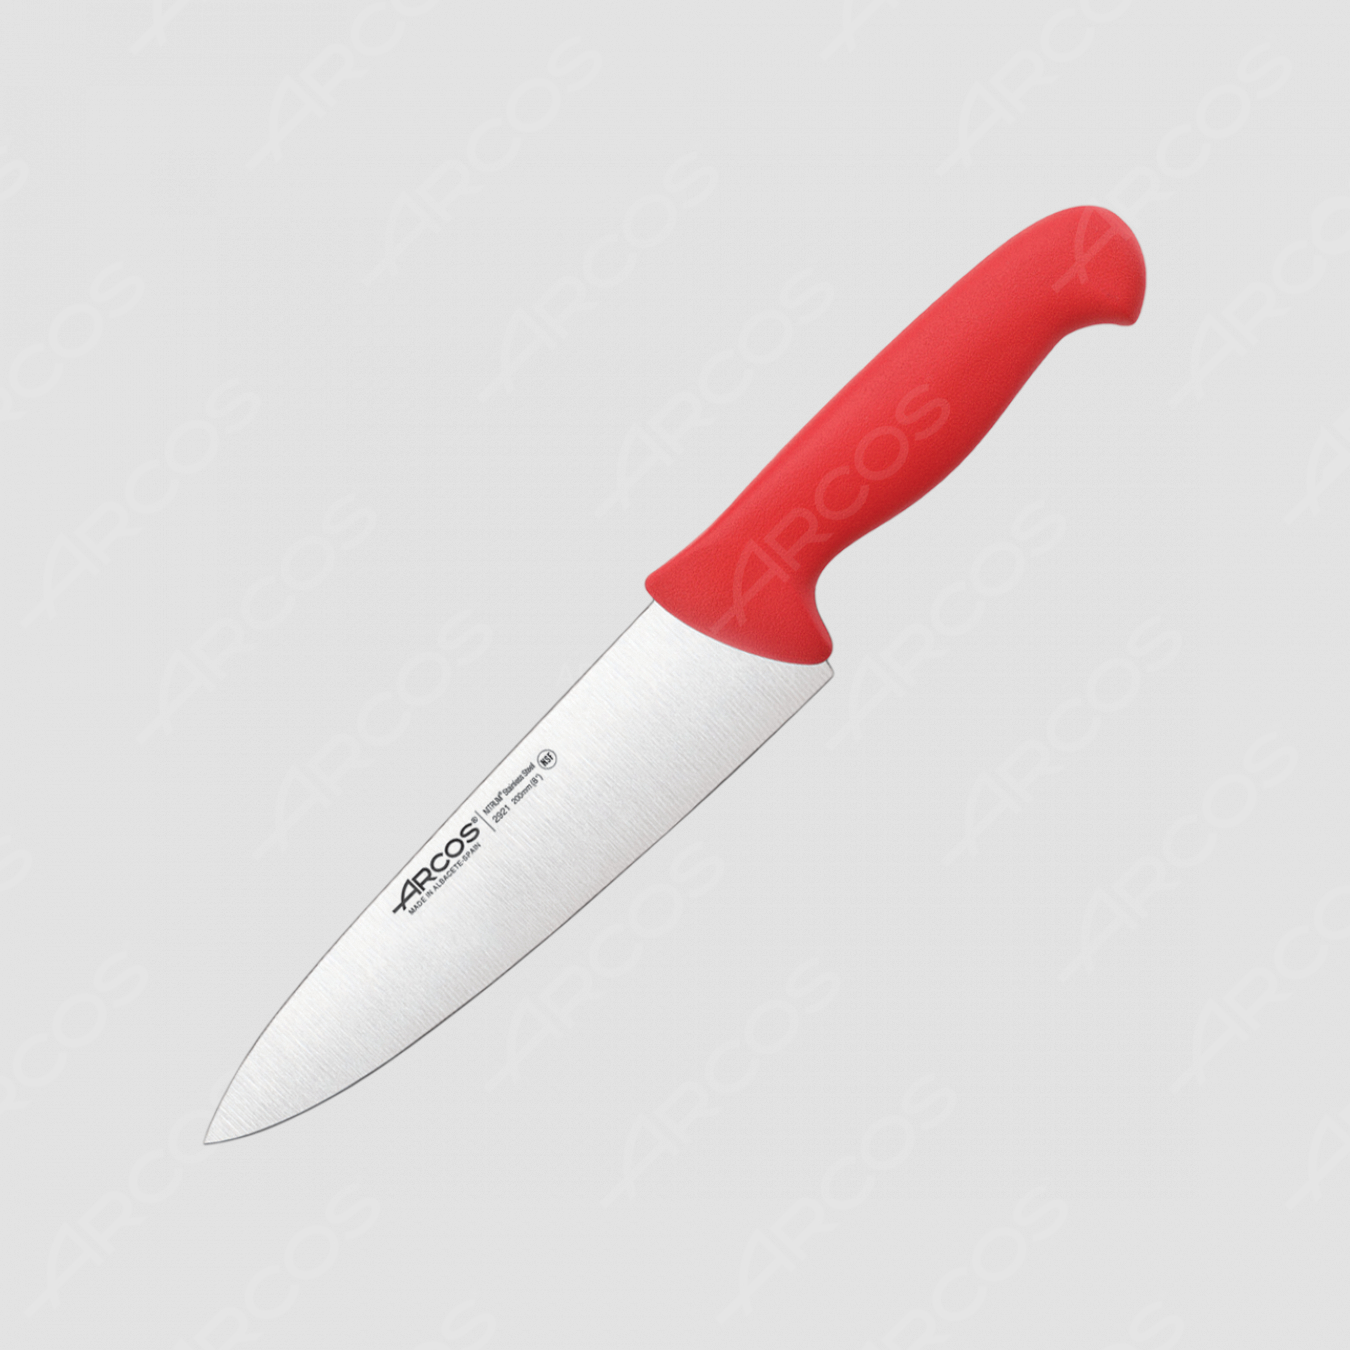 Профессиональный поварской кухонный нож 20 см, рукоять красная, серия 2900, ARCOS, Испания